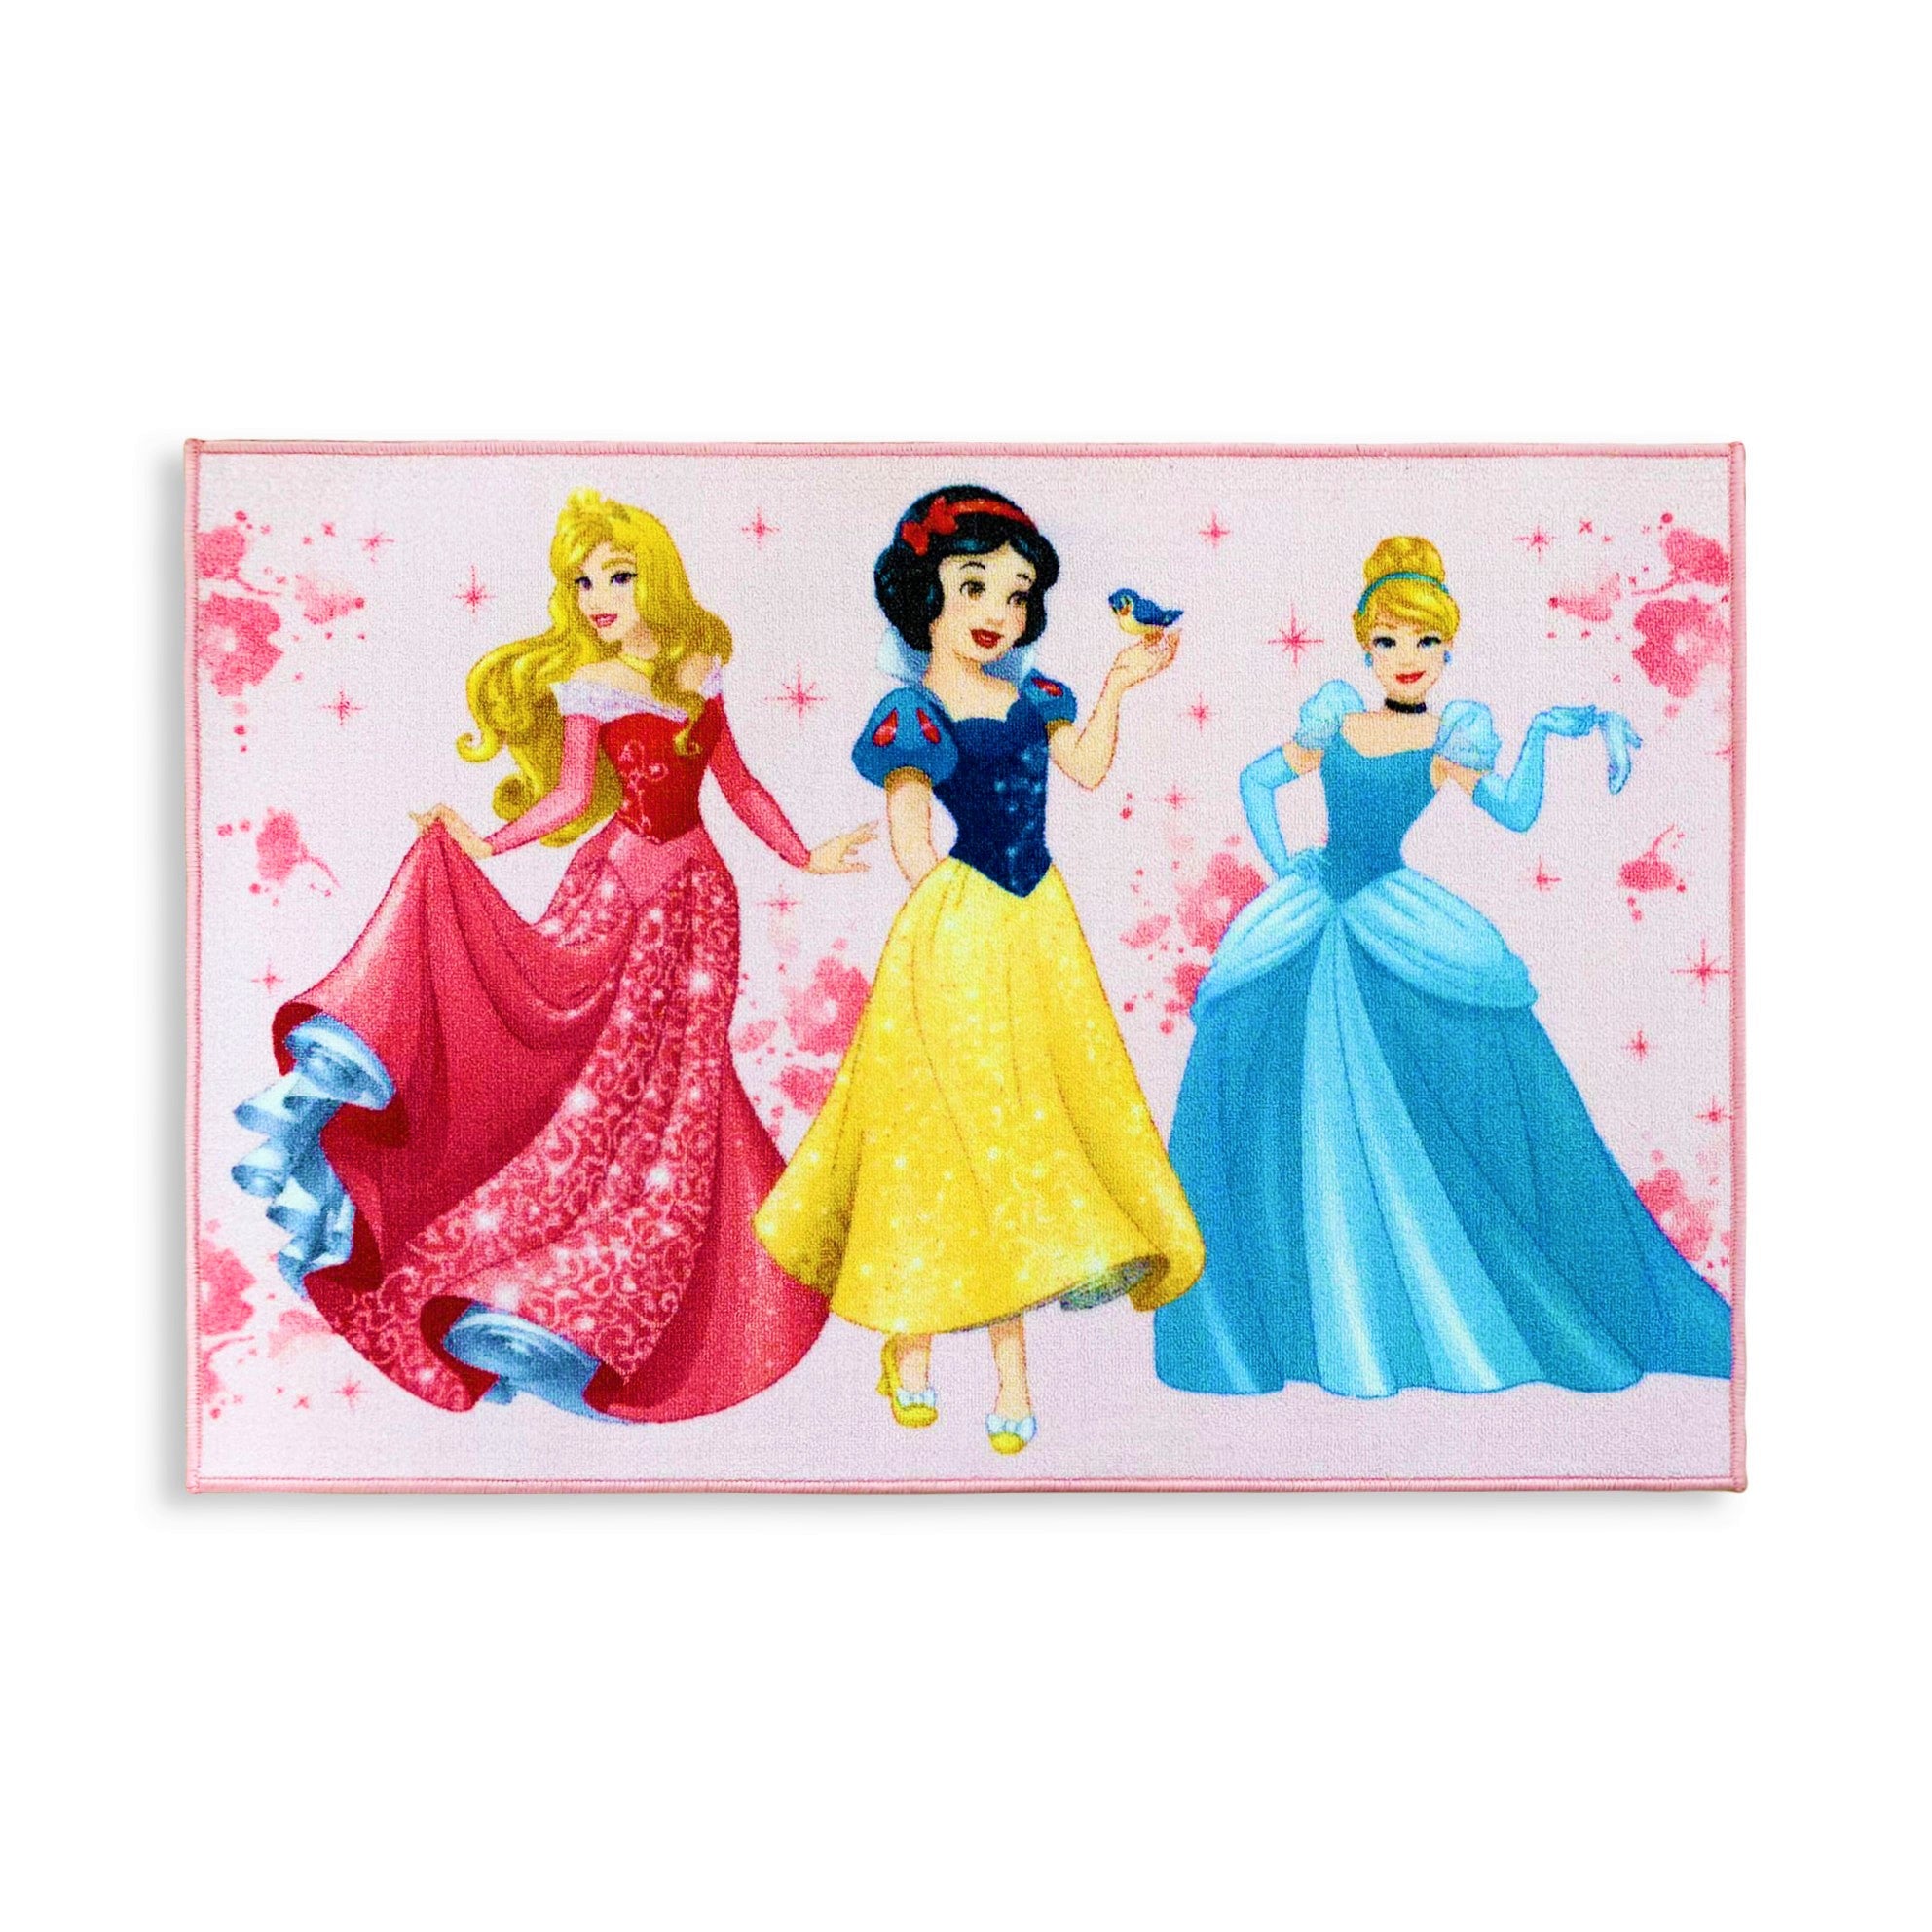 Tappeto antiscivolo cameretta bambini Disney Principesse 80x120 cm 4849